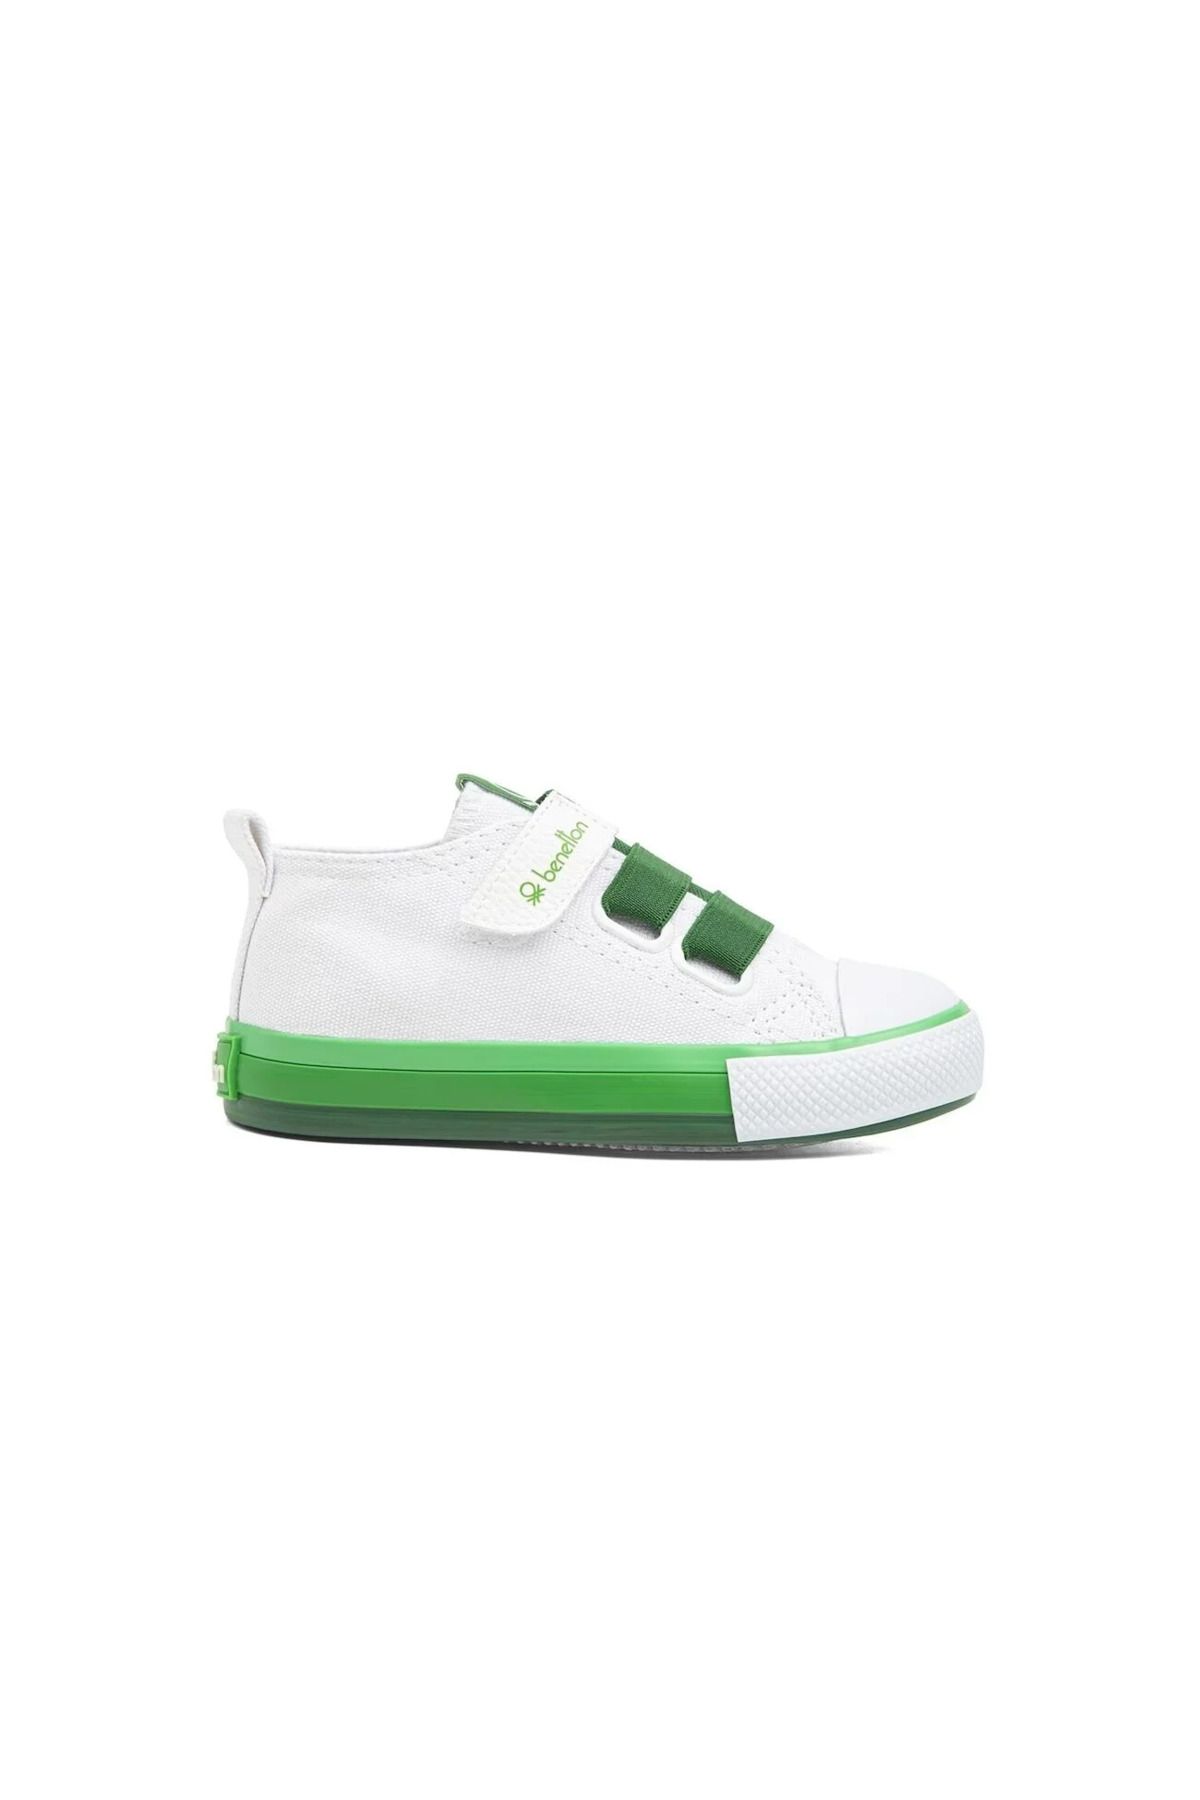 Benetton 30648-30649 Beyaz Yeşil Çocuk Spor Ayakkabı